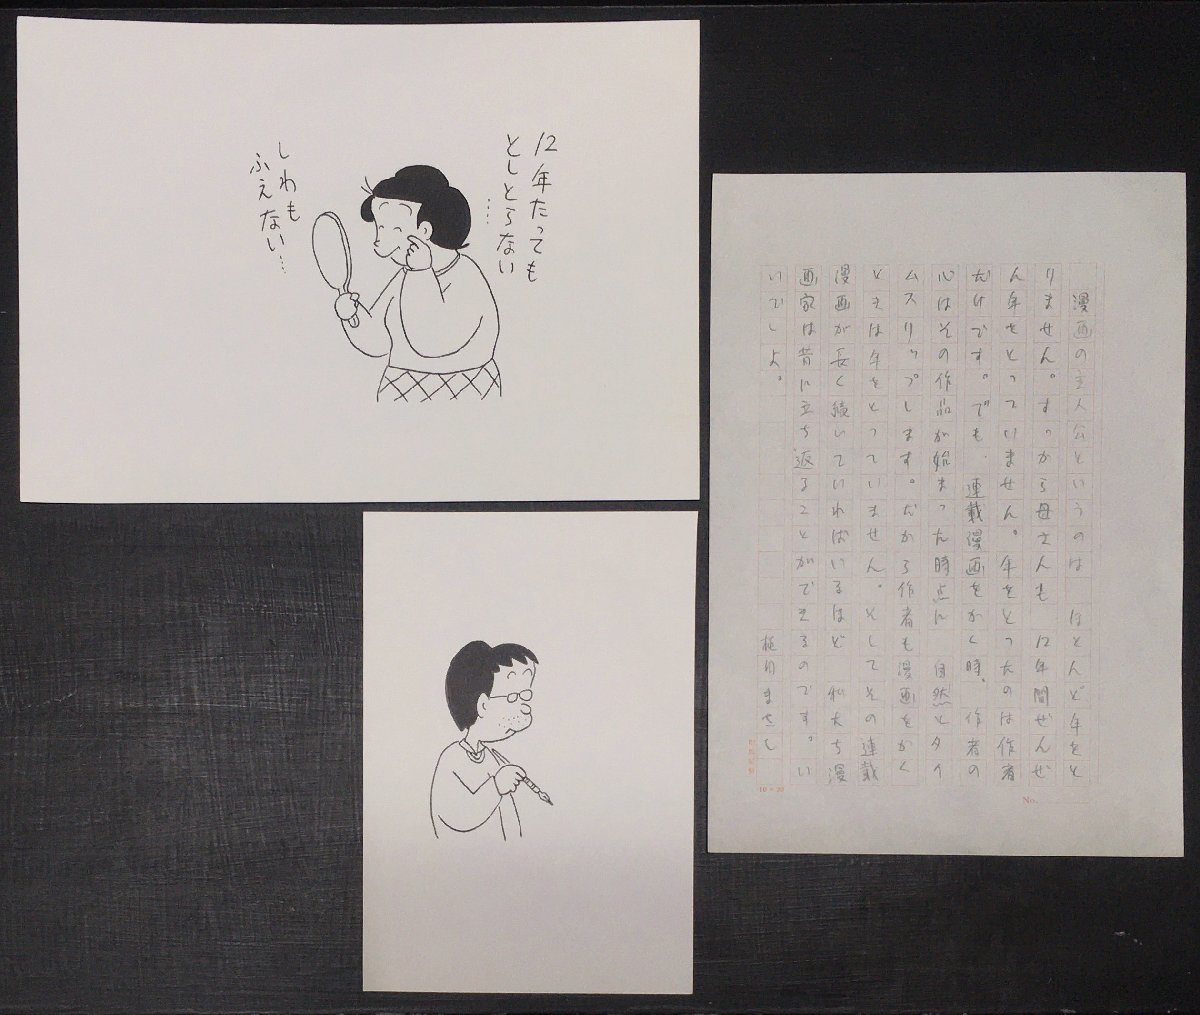 진품 보장: 우에다 마사시(Masashi Ueda)가 손으로 그린 일러스트레이션 2개와 손으로 그린 초안 1개, 만화, 애니메이션 상품, 징후, 자필